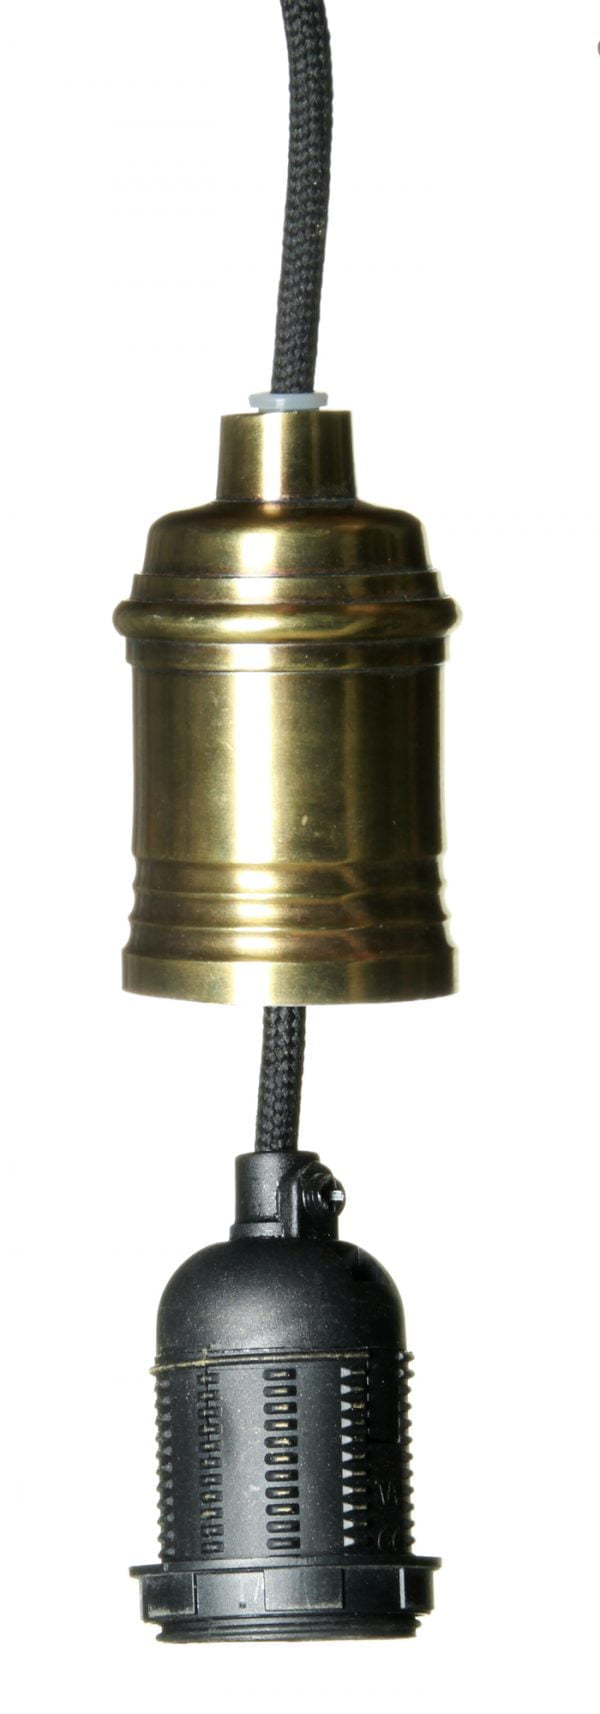 Antikmessingin värinen lampunkanta, jossa on musta, kangaspäällysteinen johto sekä ulosvedettävä sähköosa.